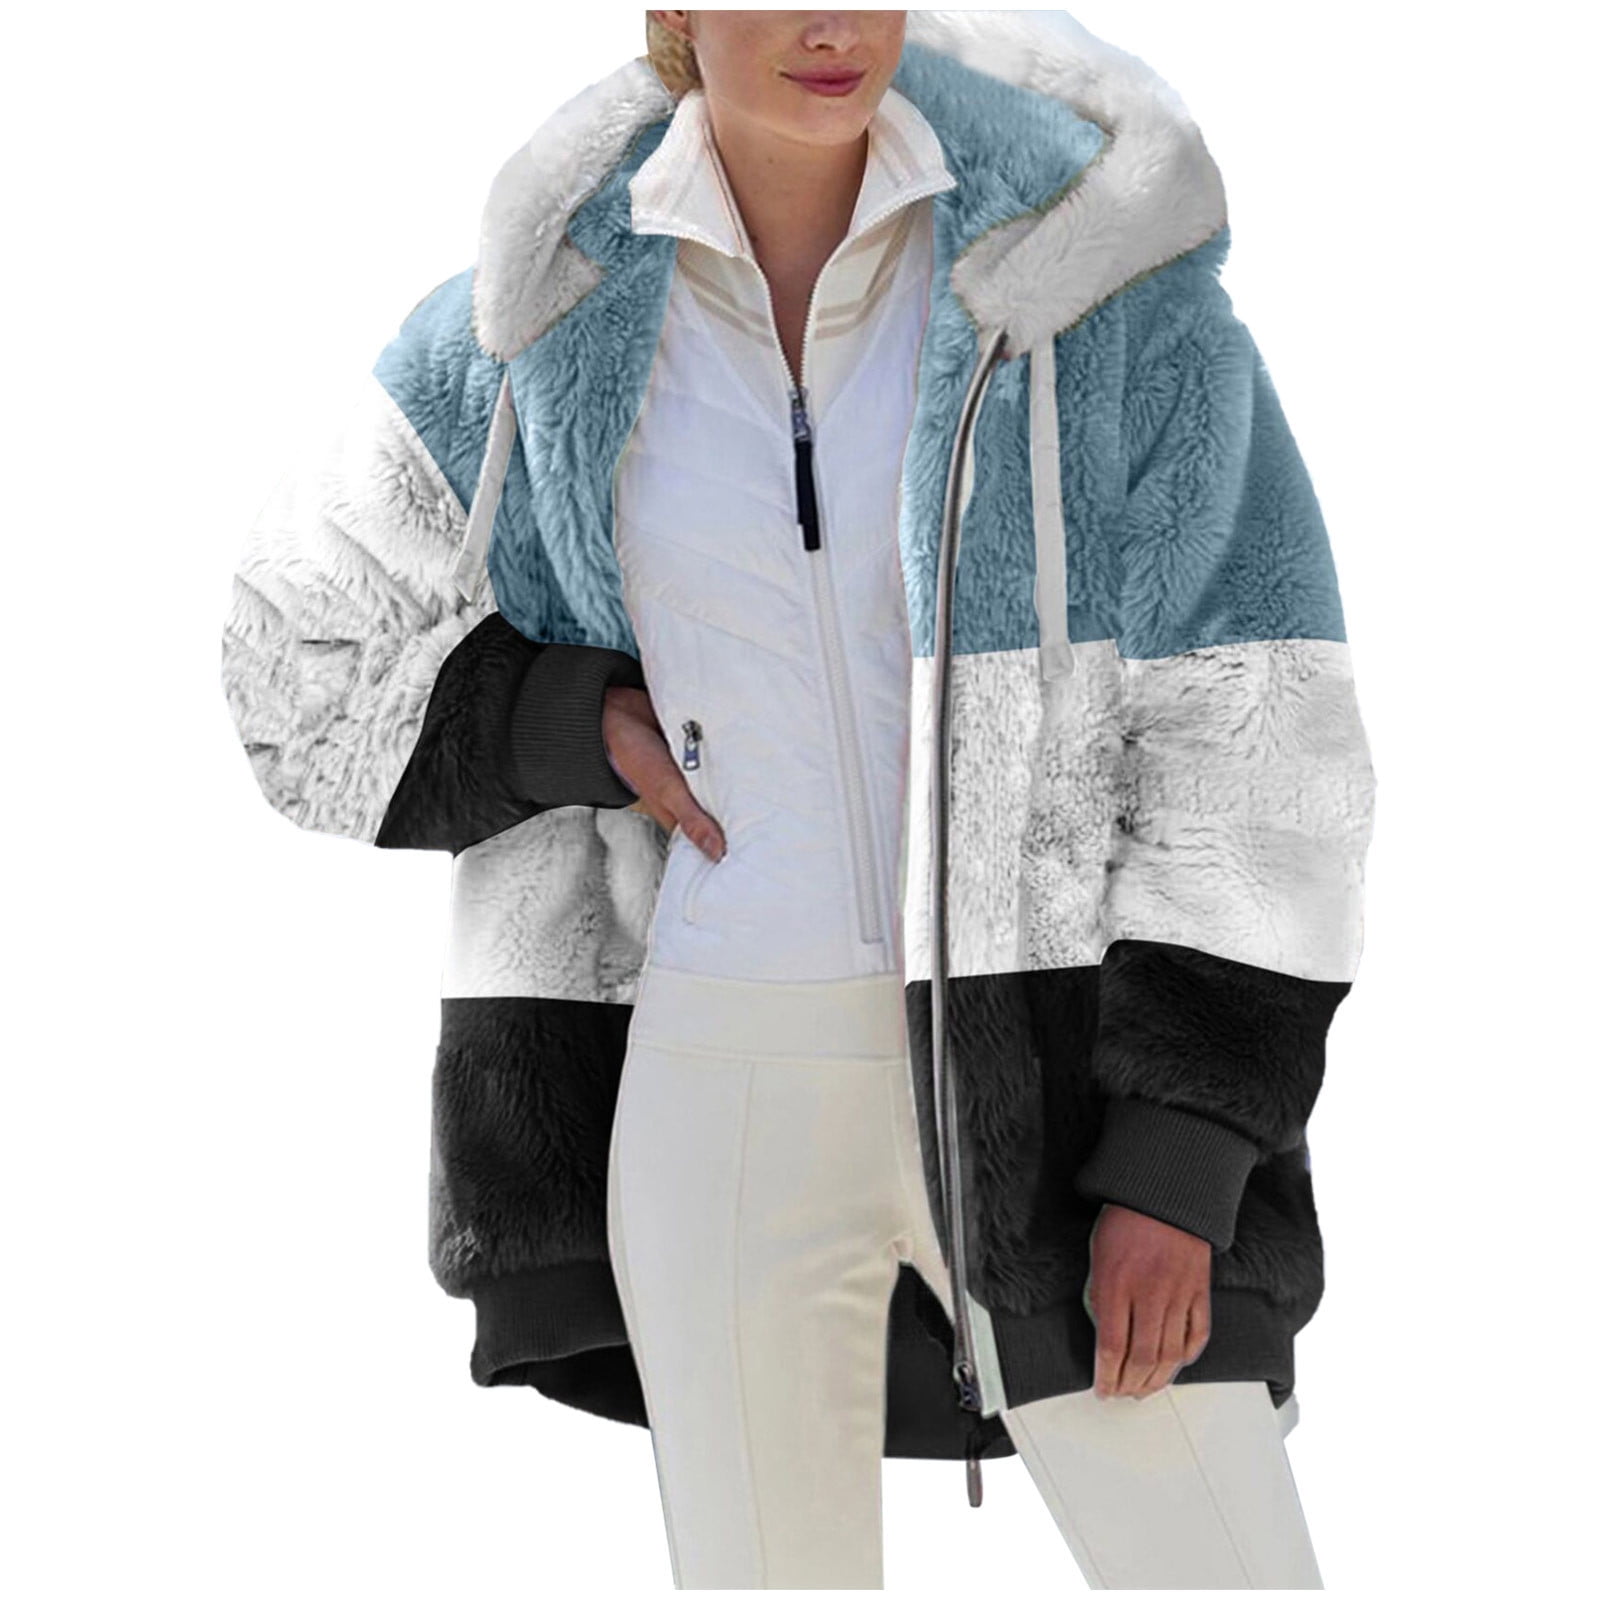 Scyoekwg Clearance Womens Winter Jacket Plus Size Womens Fashion Zipper ...